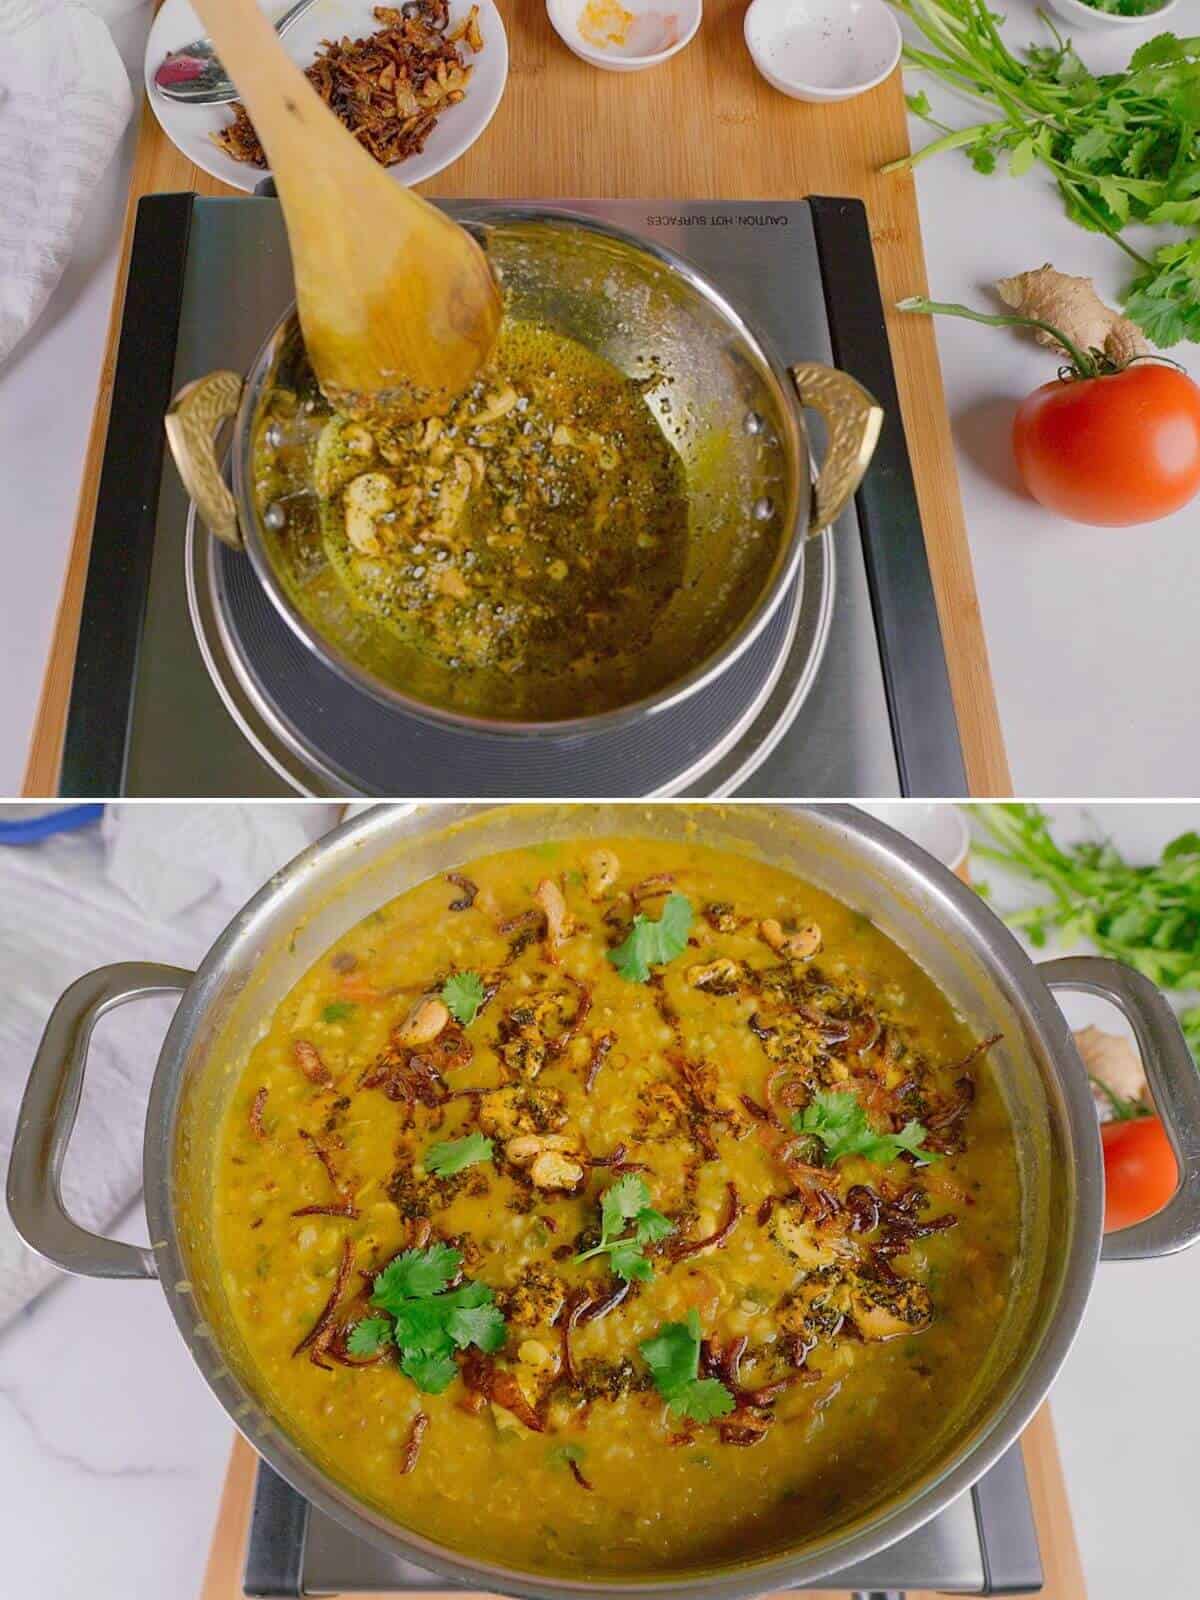 Seasoning mixture to top the khichda.